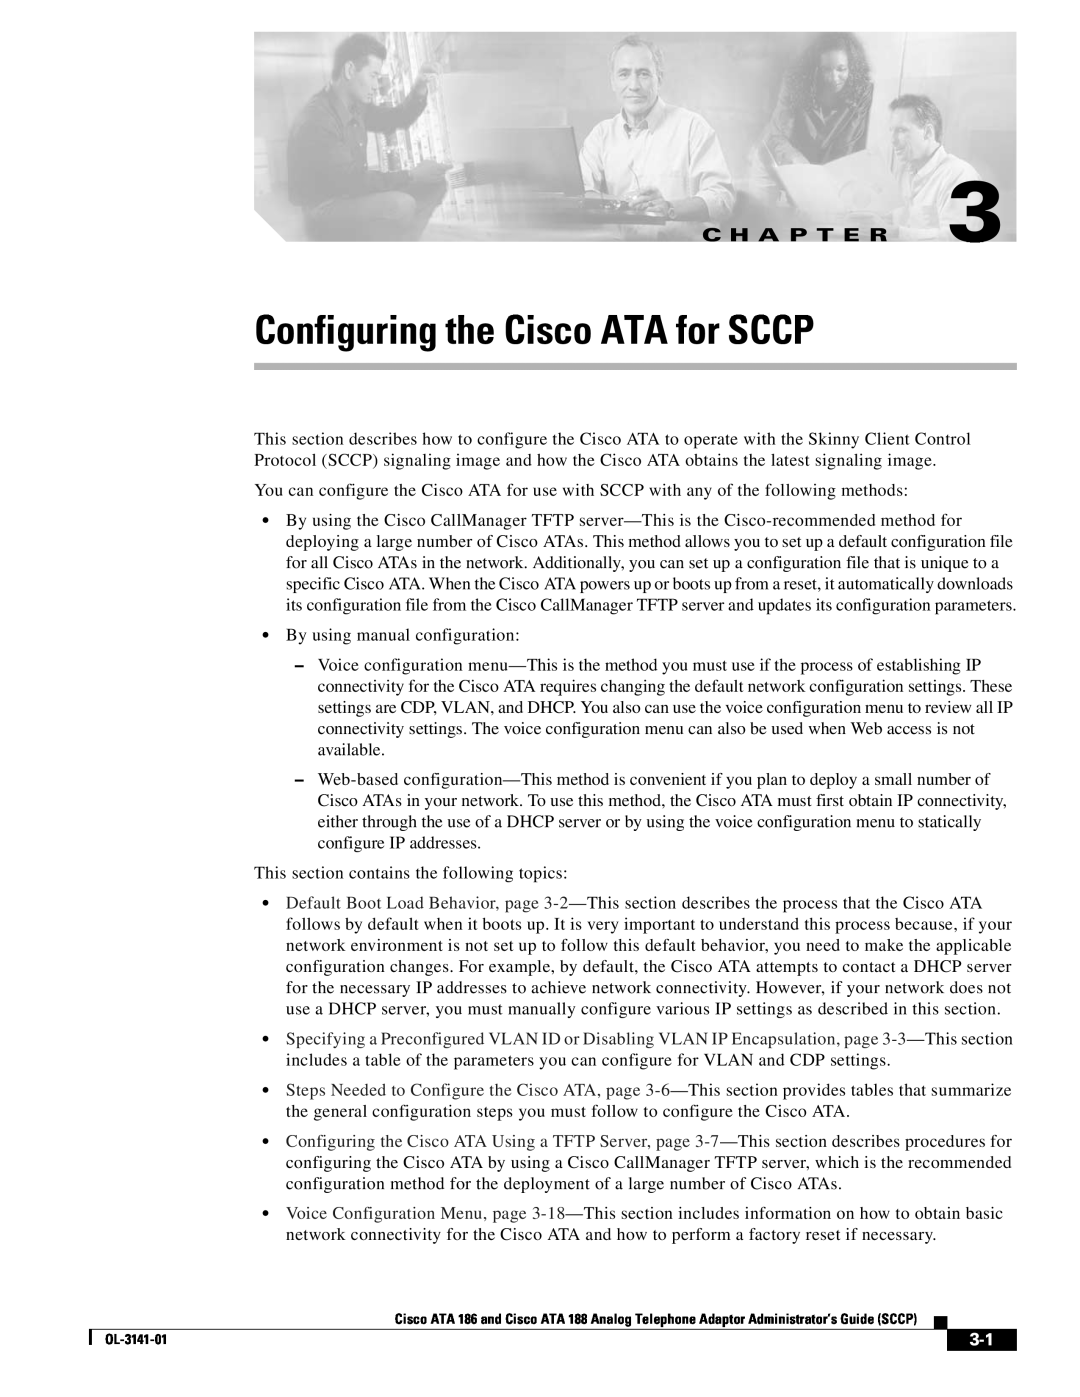 Cisco Systems ATA 188, ATA 186 manual Configuring the Cisco ATA for SCCP, C H A P T E R 